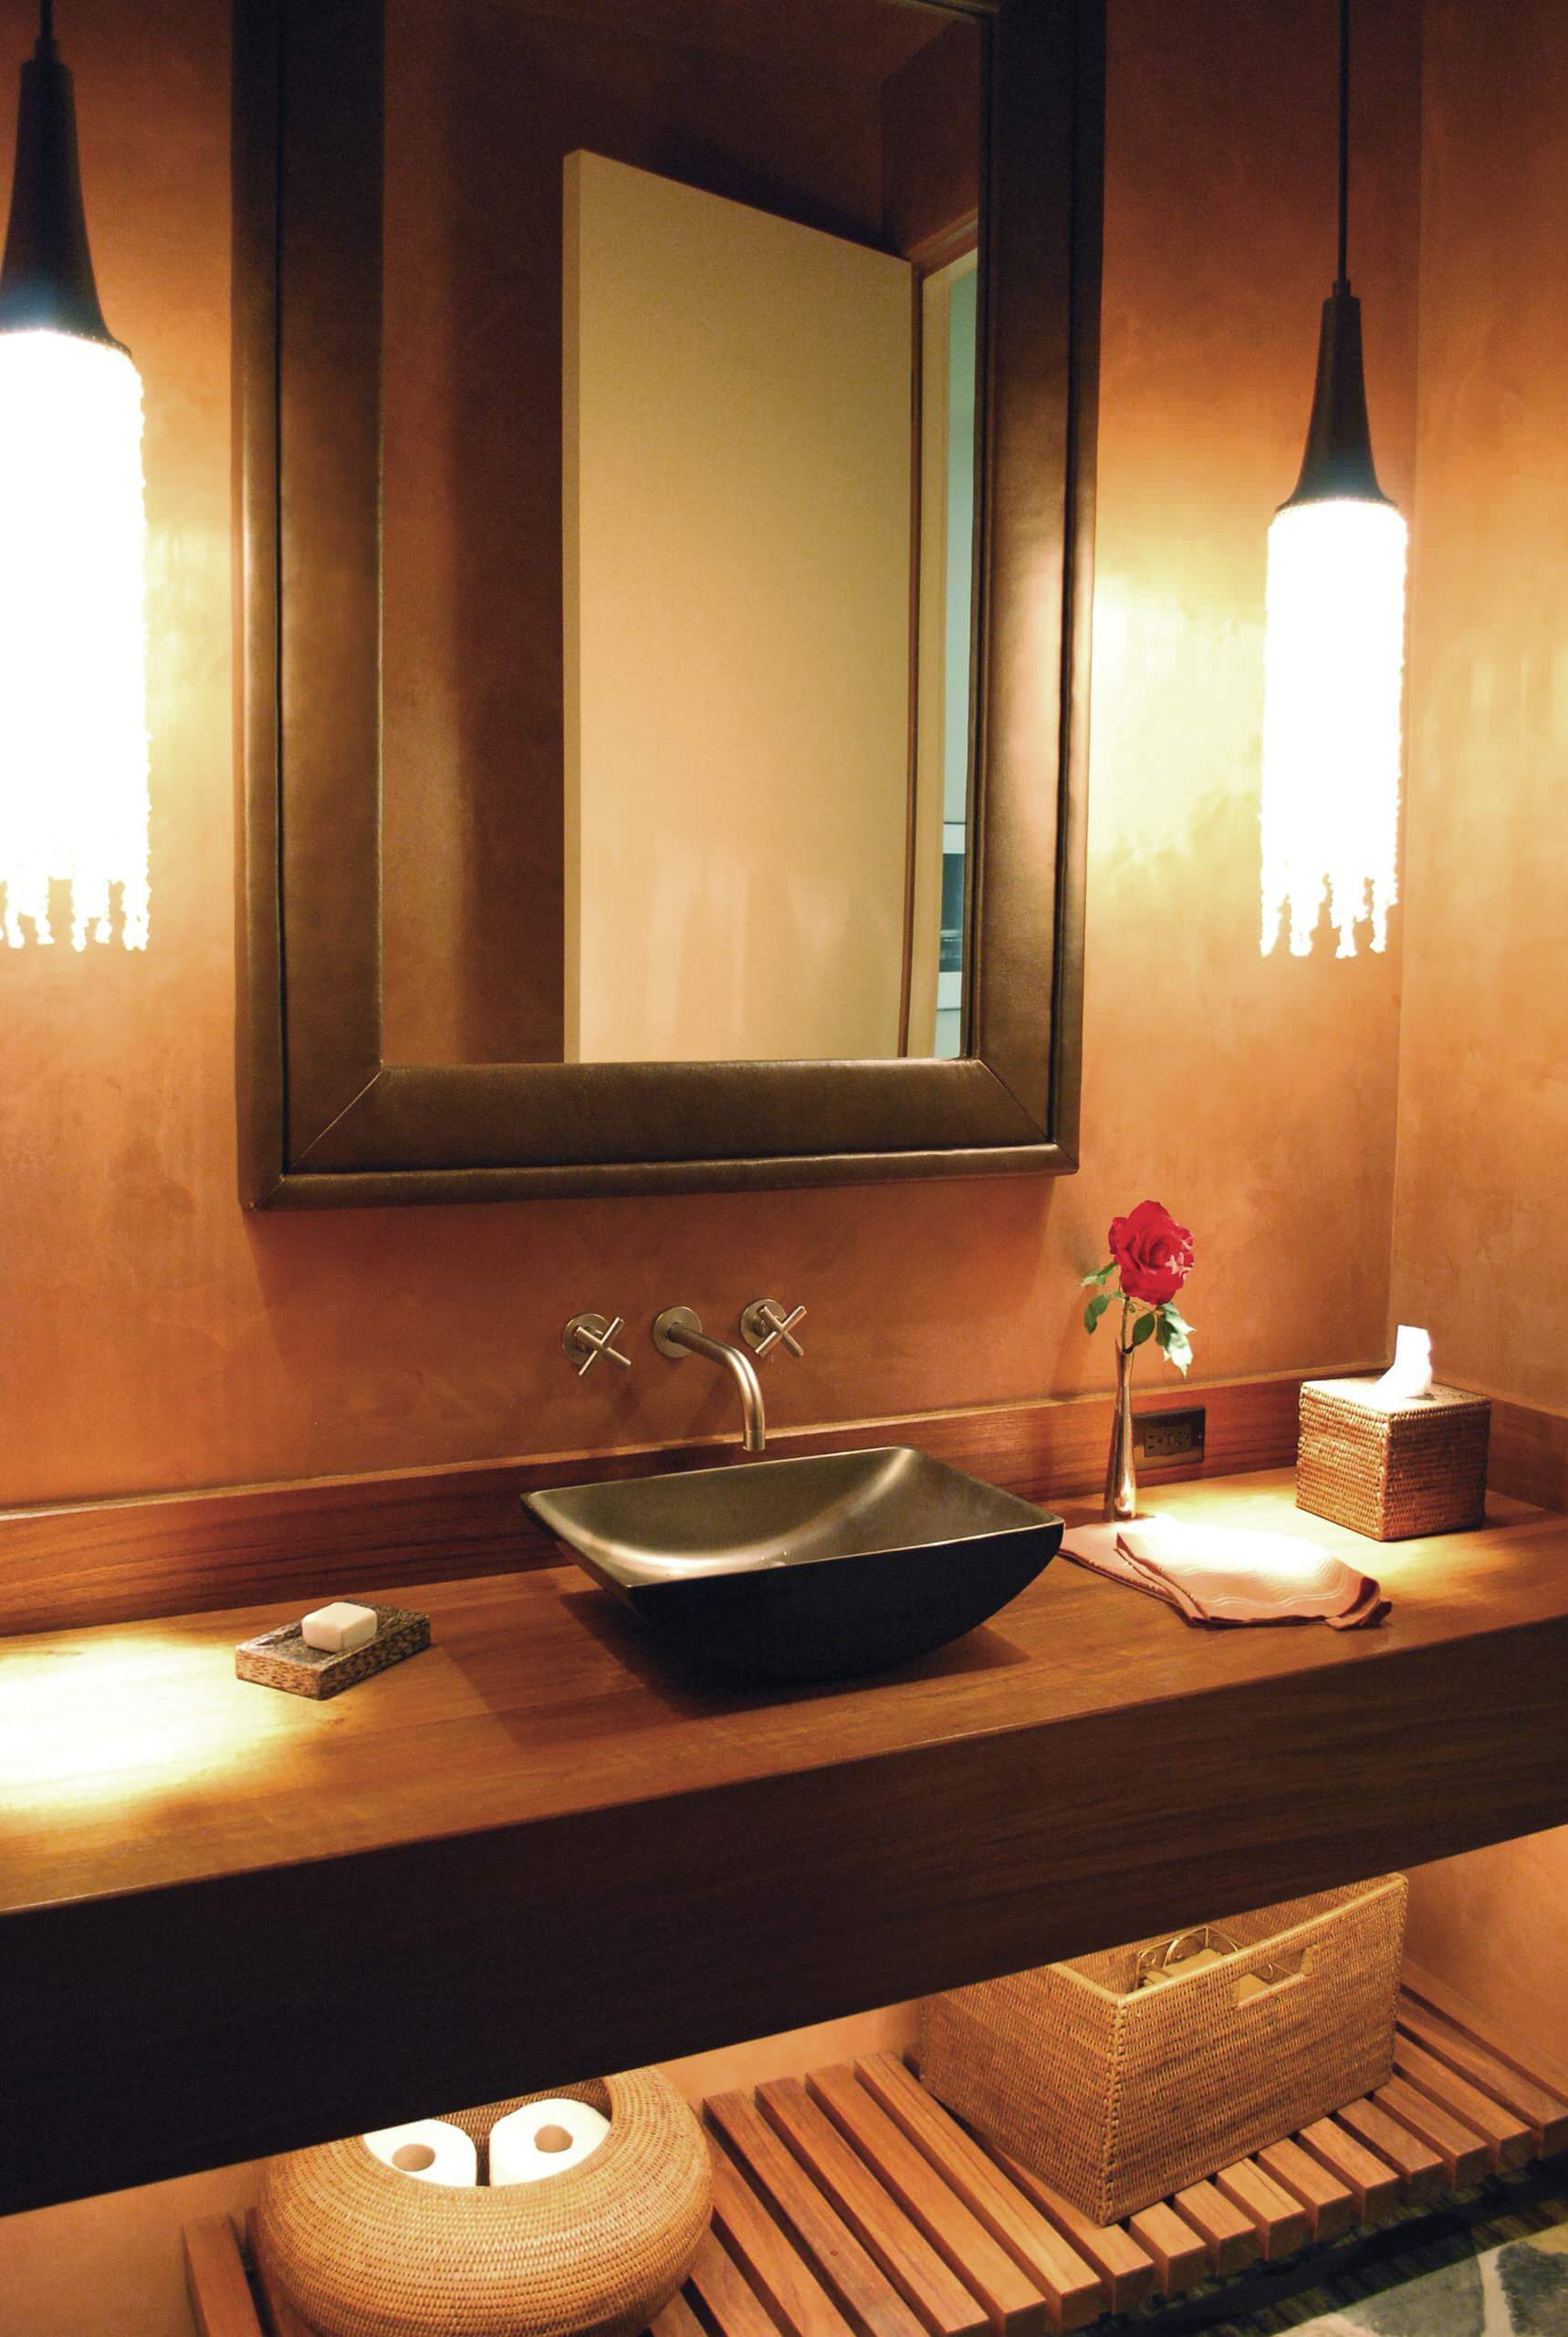 6 contemporary bathroom faucet designs